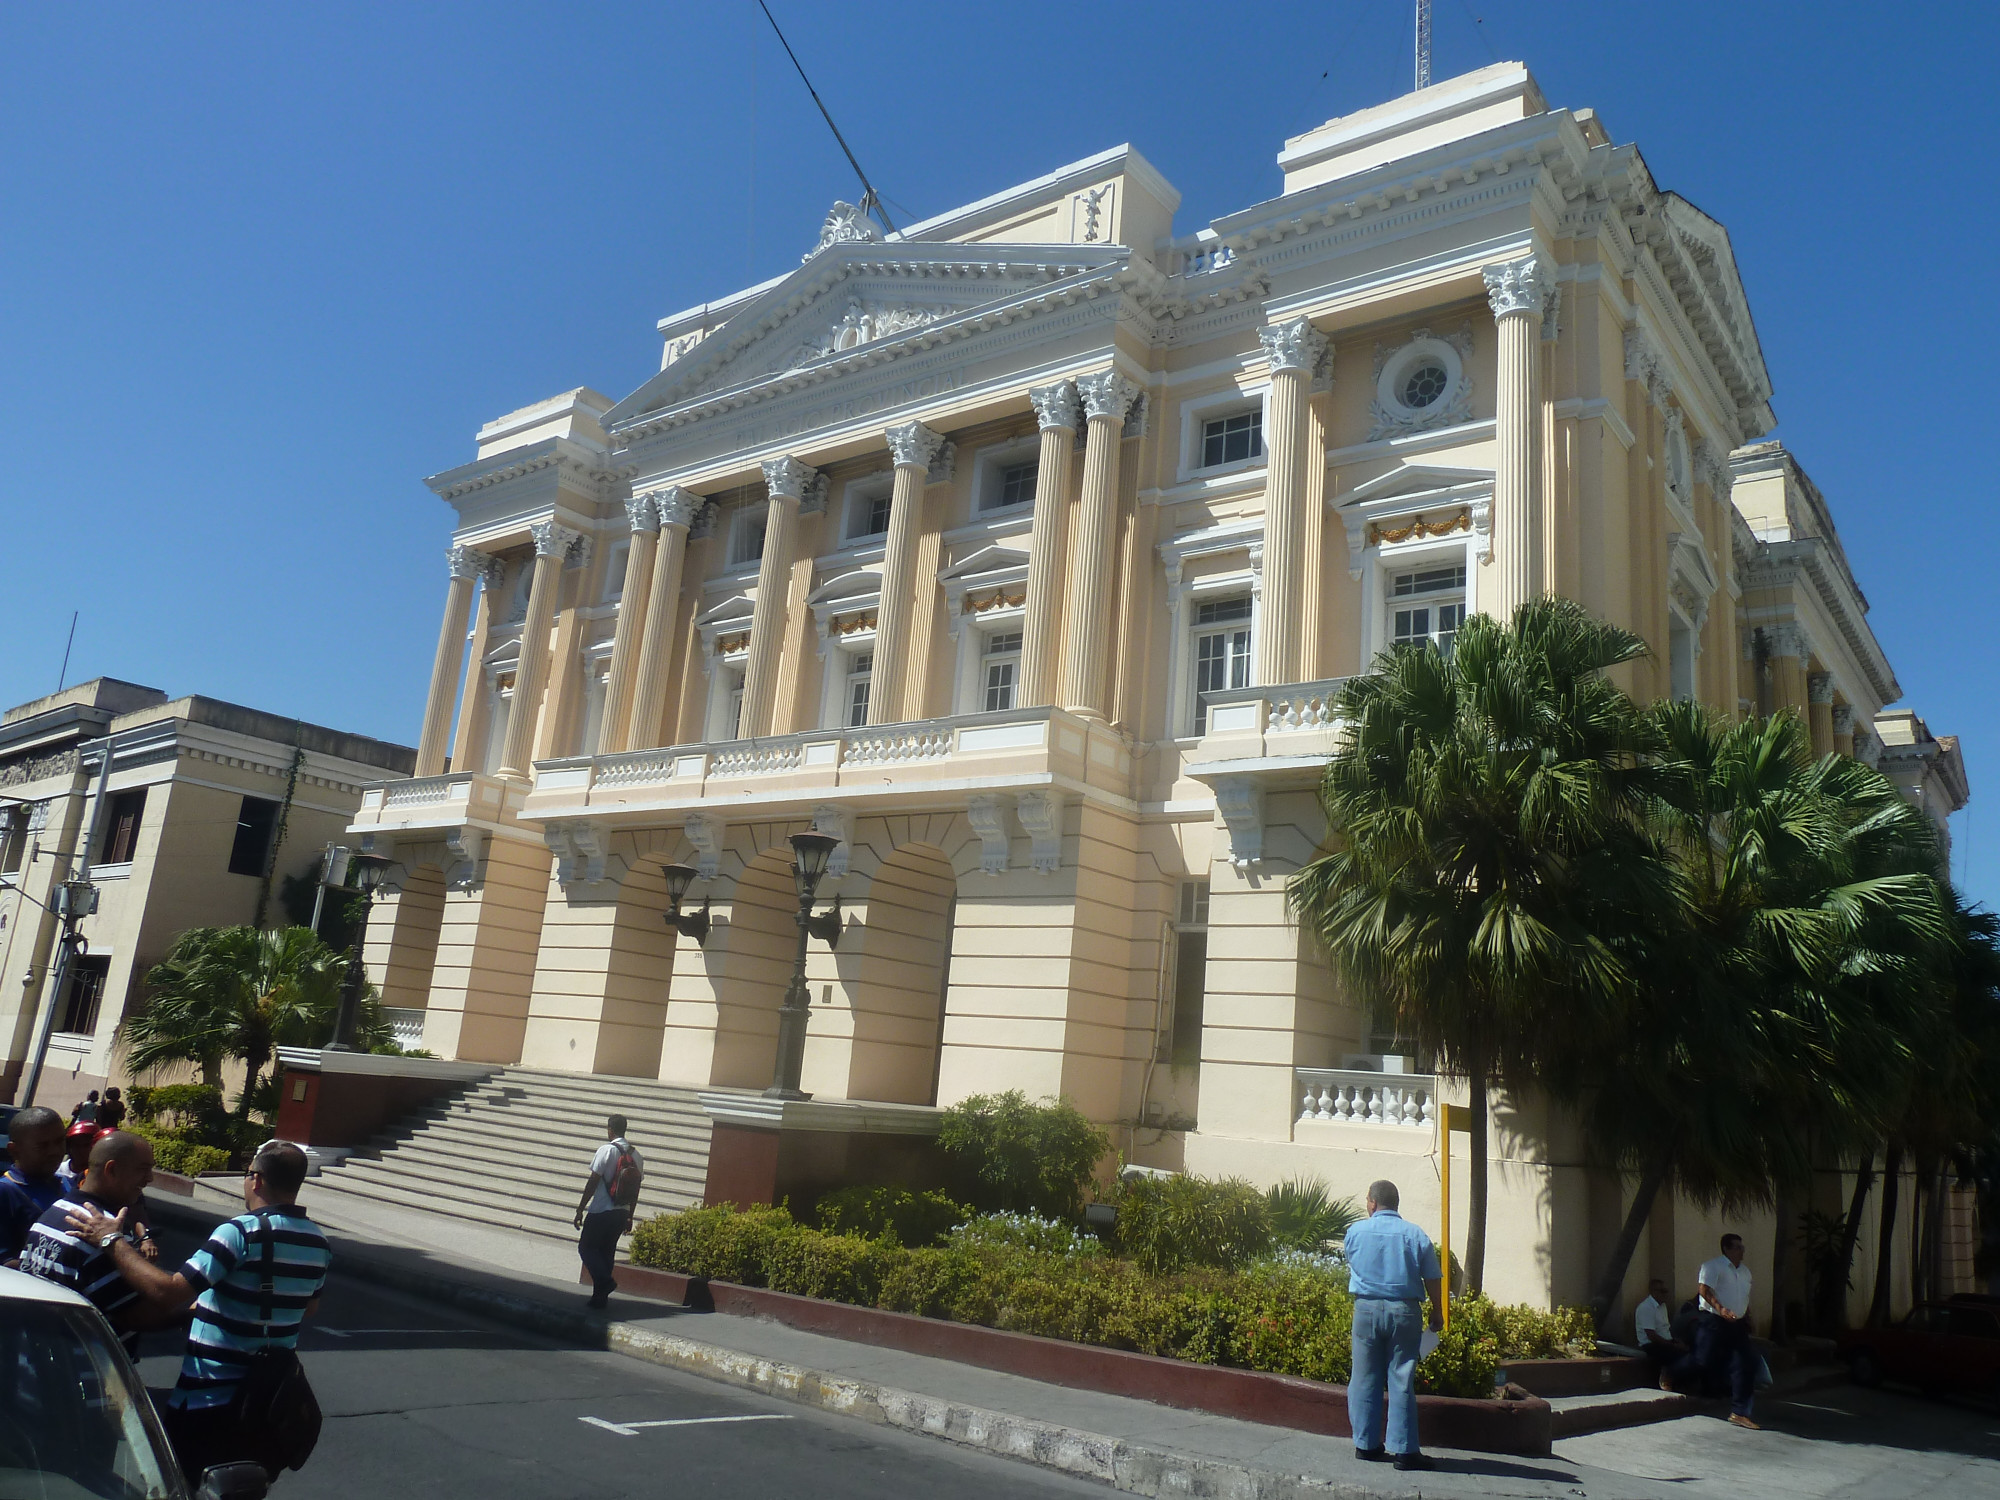 Gobierno Provincial Santiago de Cuba<br/>
City or town hall